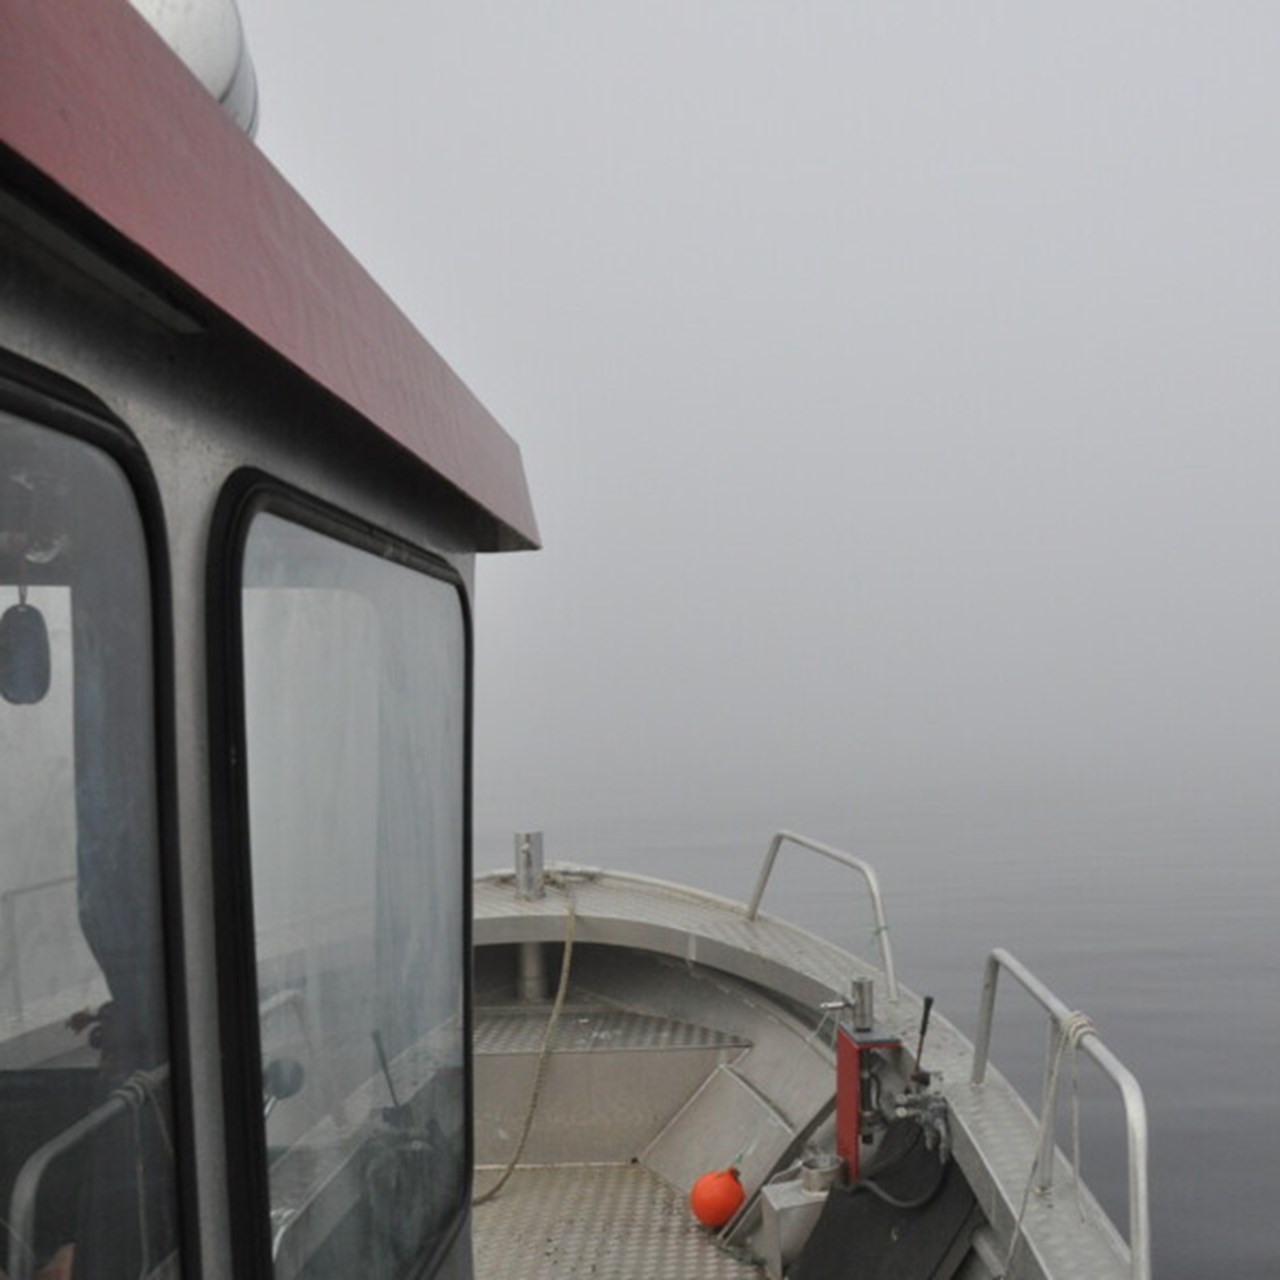 dimma på örefjärden sett från båten gråsuggan